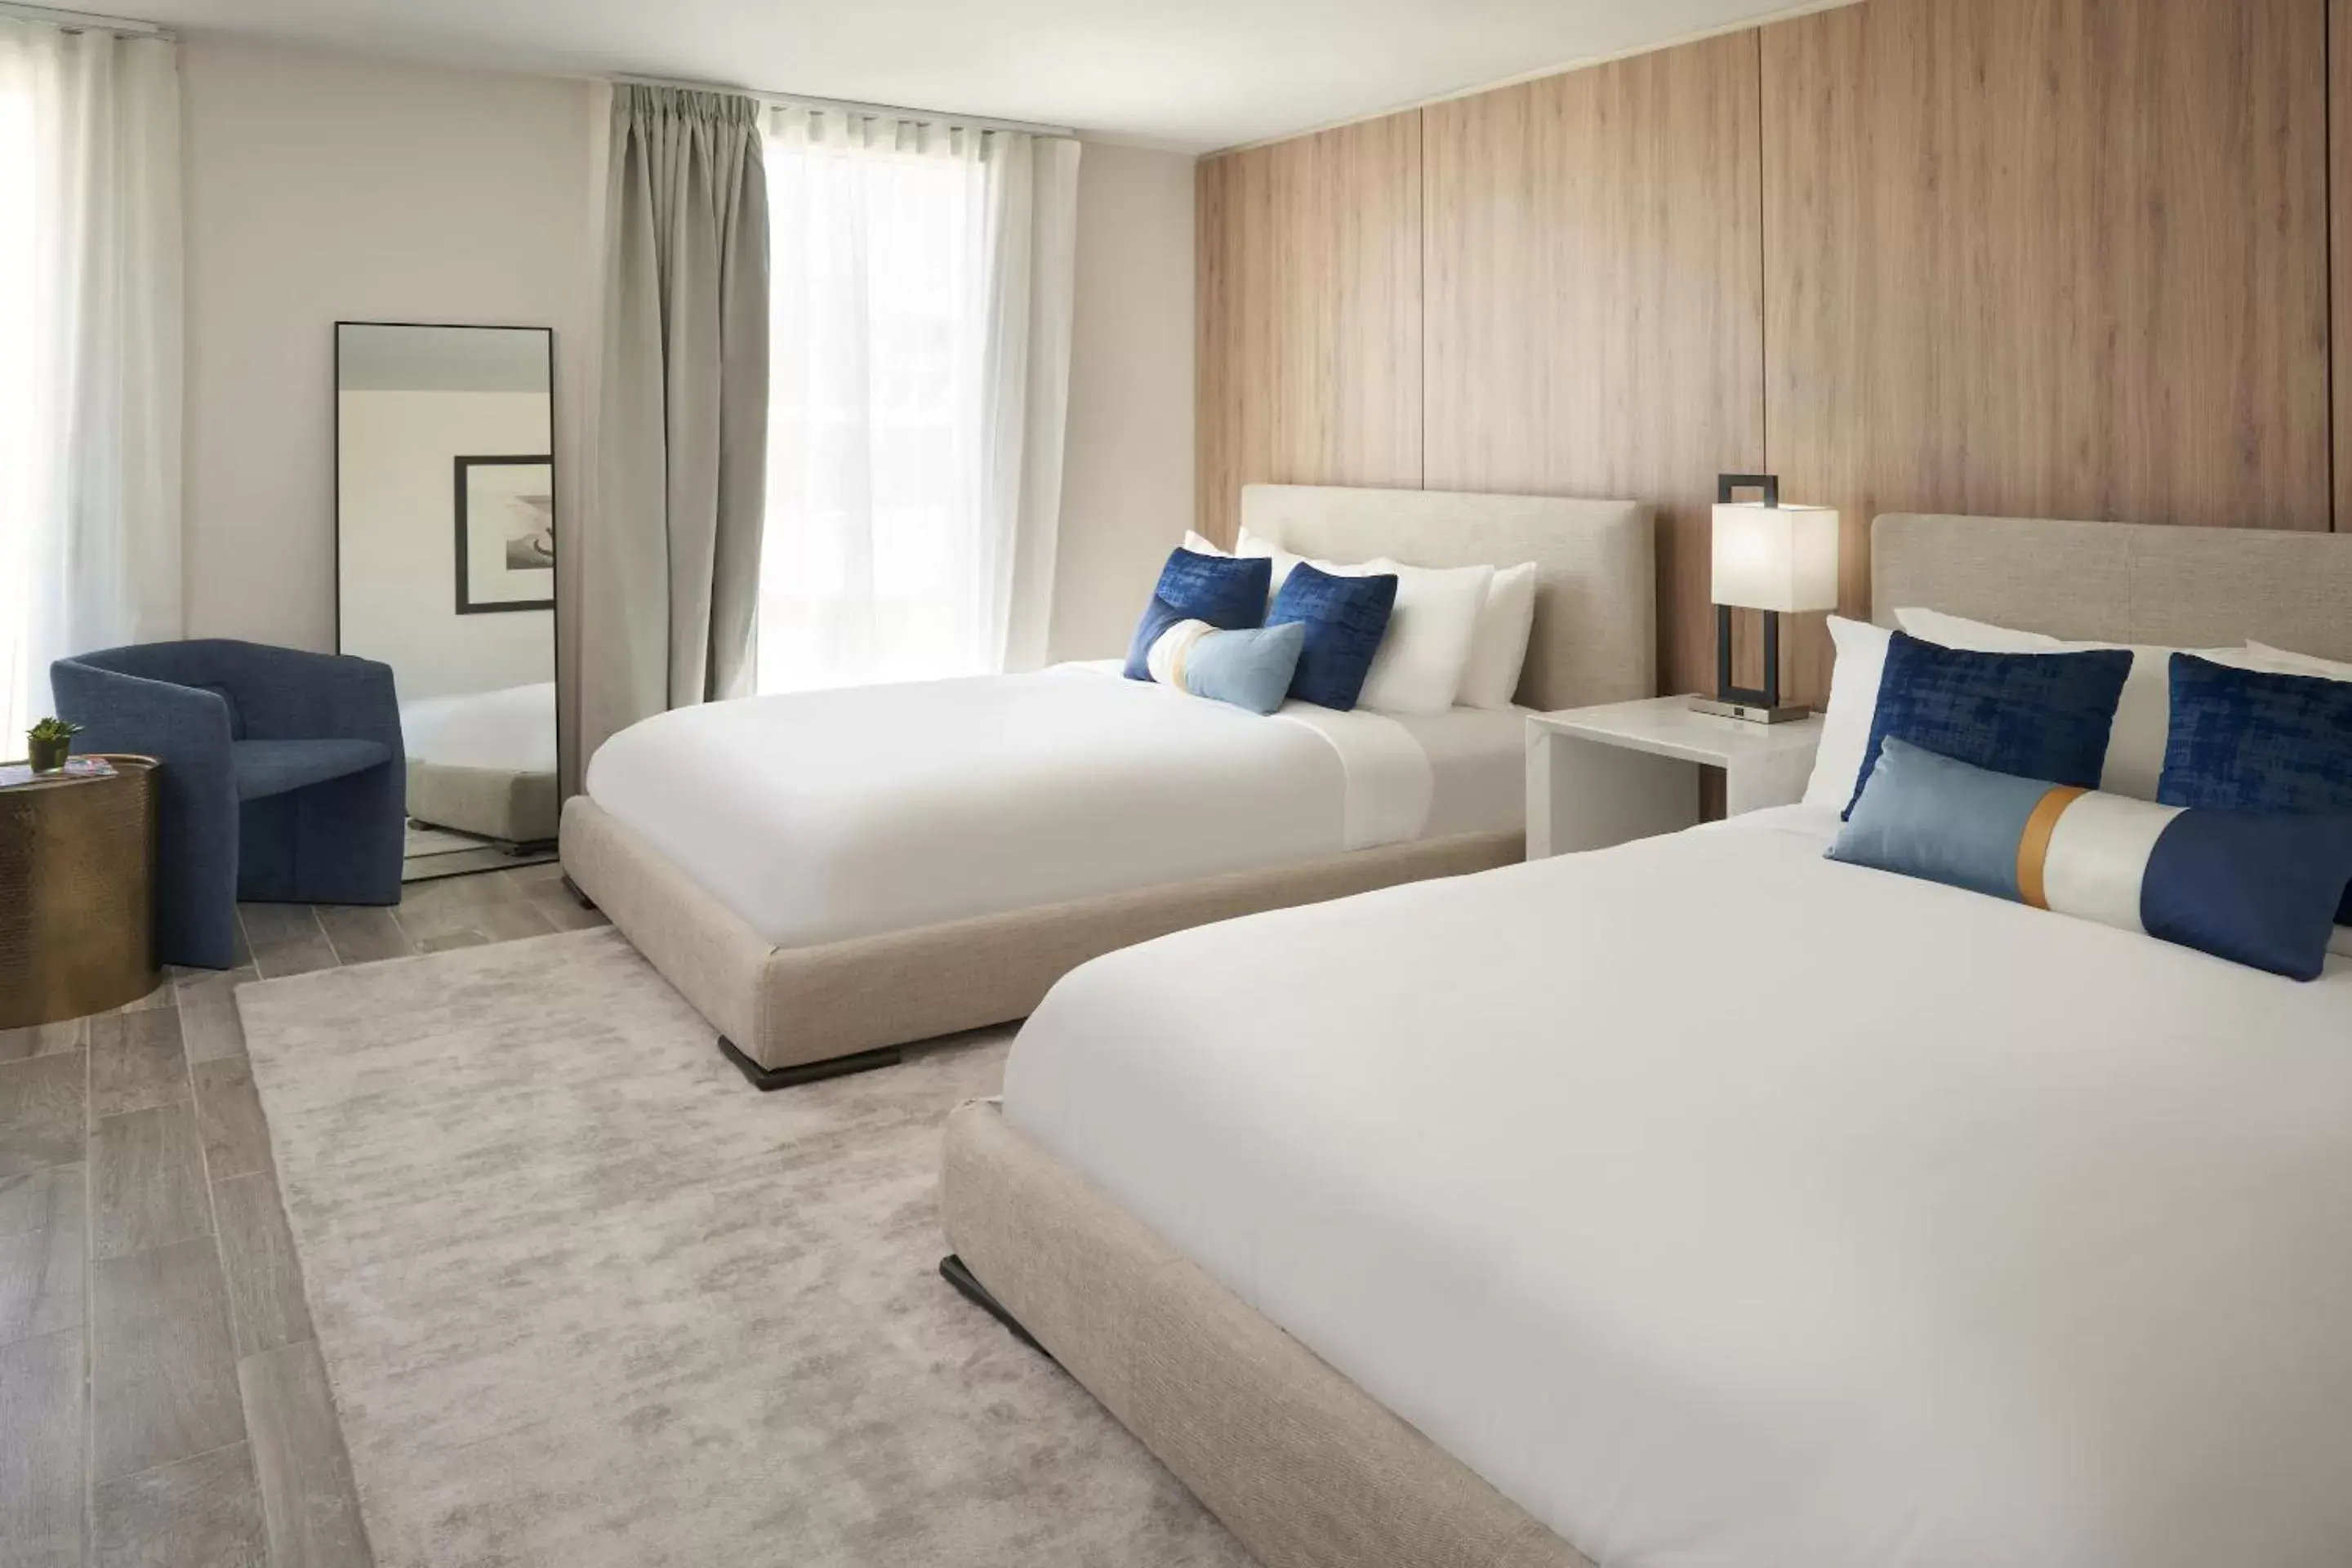 Queen Room with Two Queen Beds in Hillsboro Beach Resort